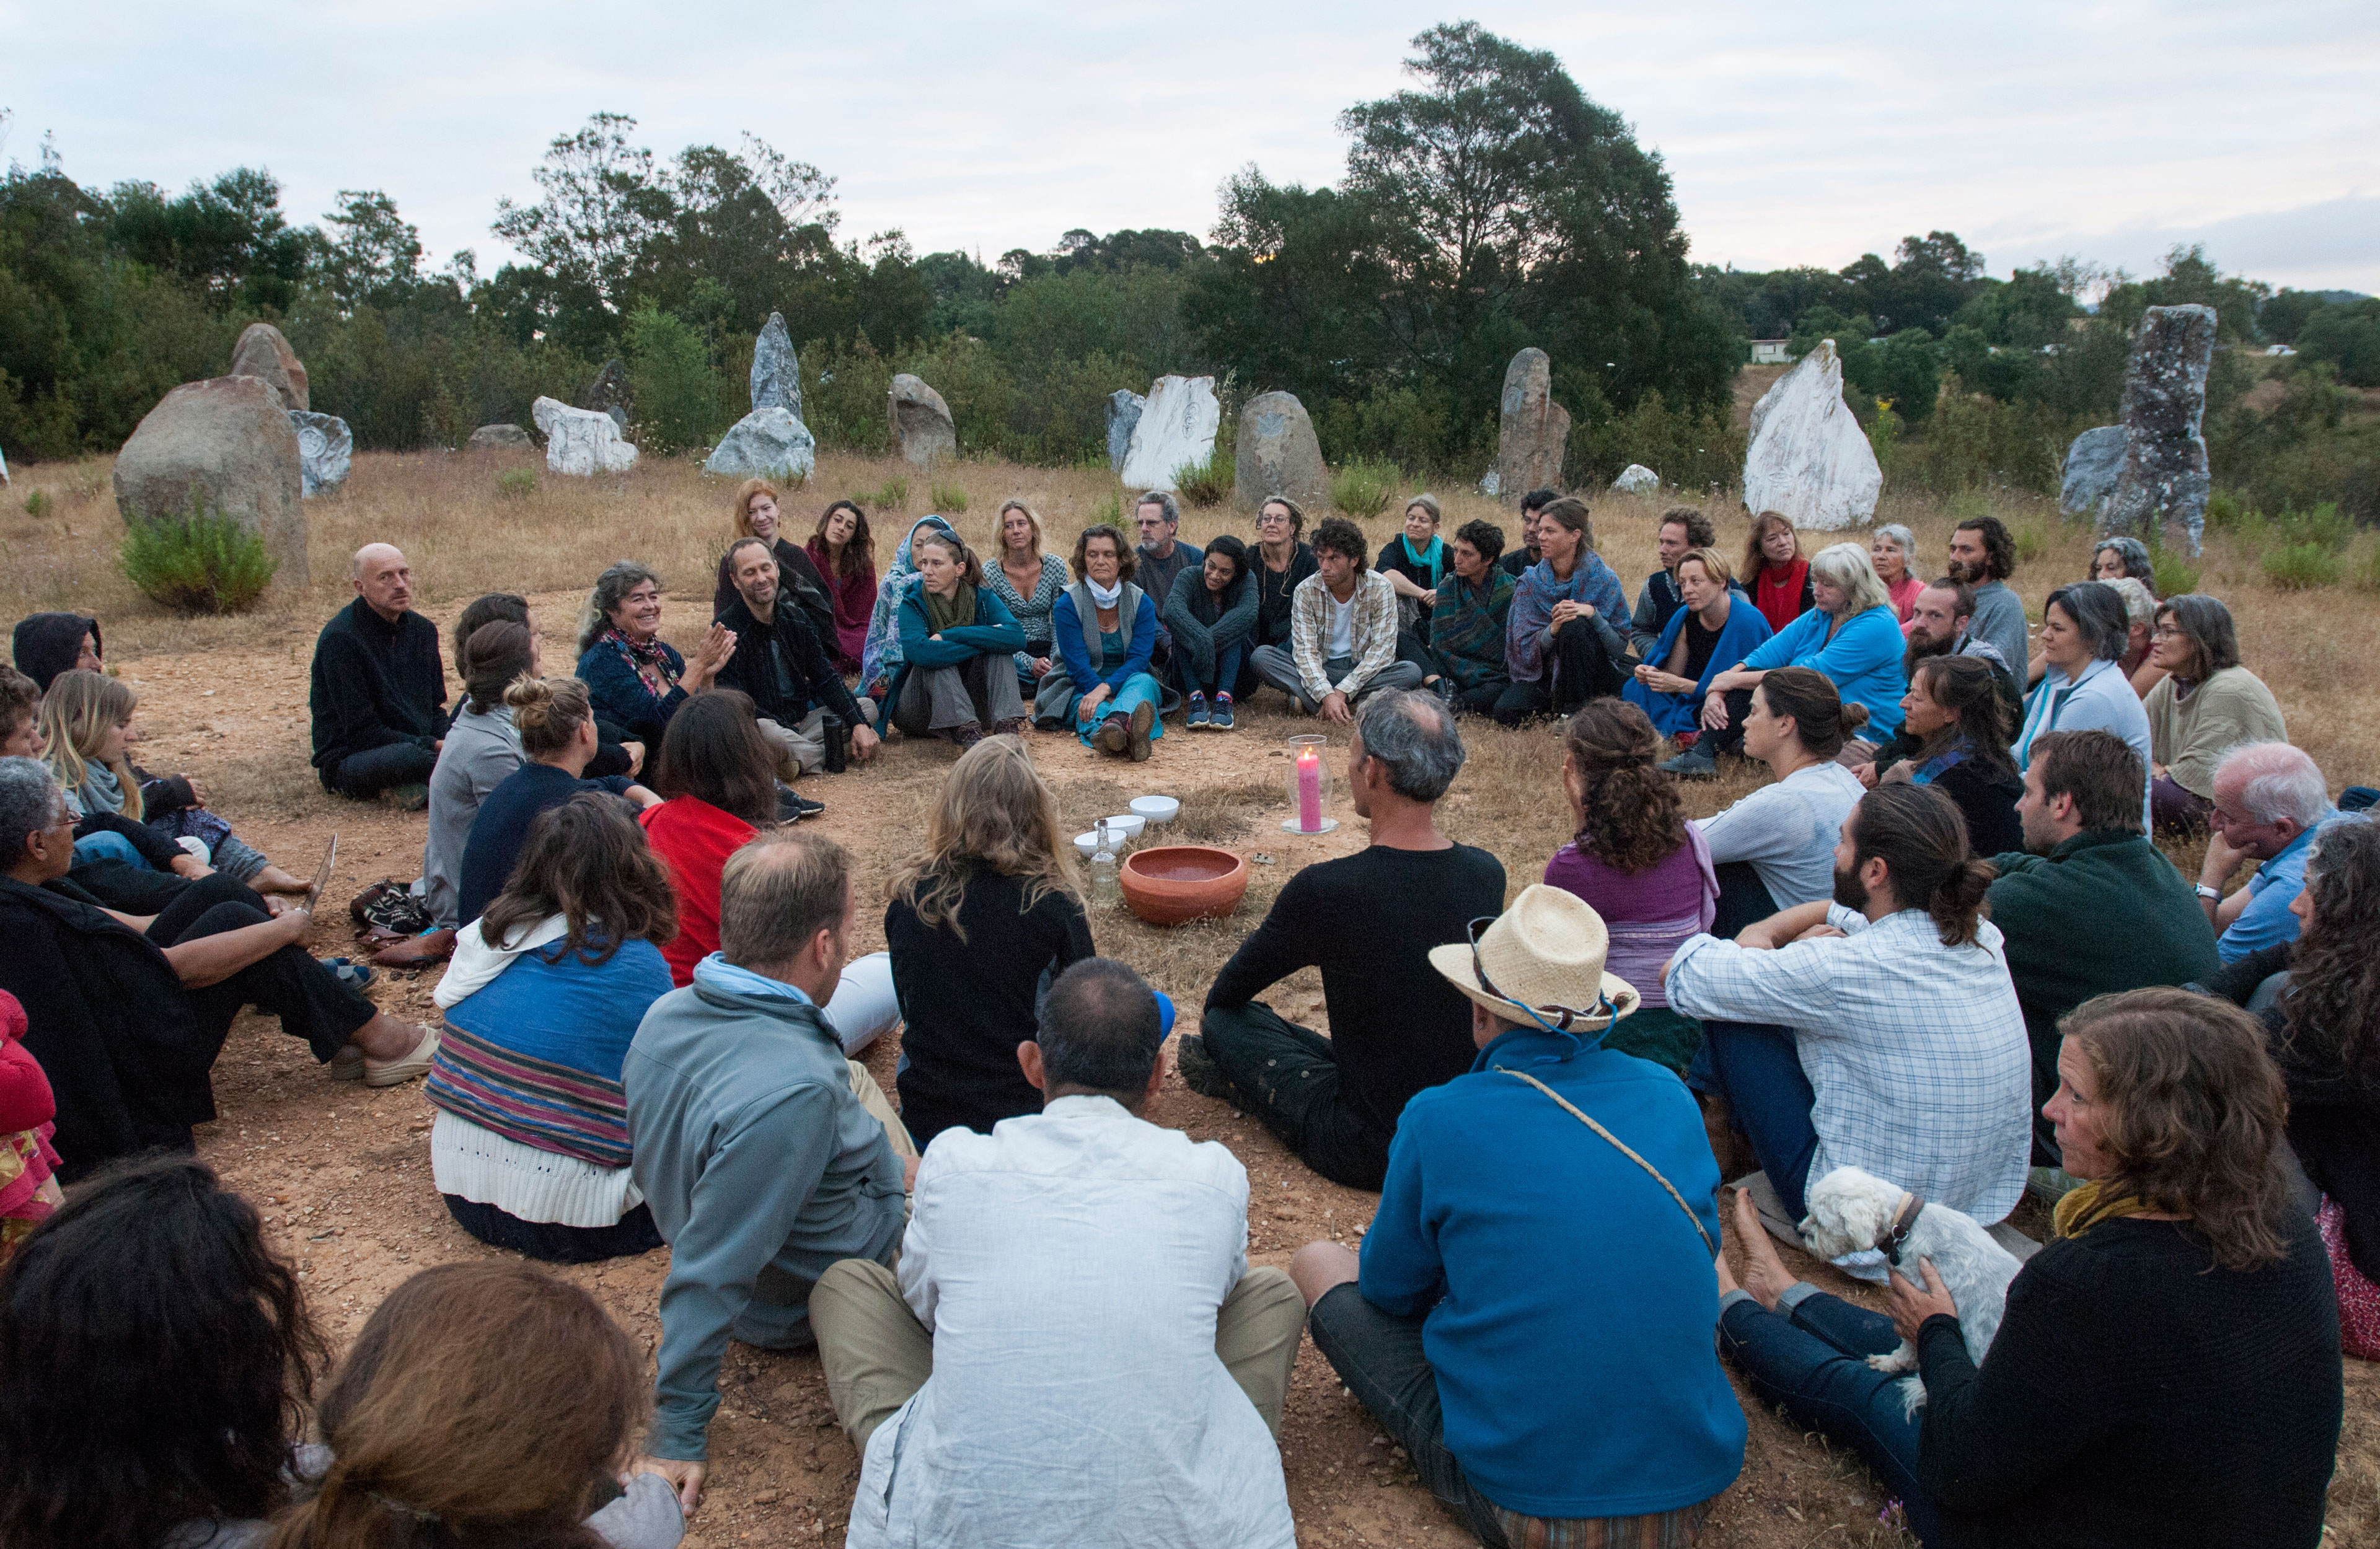 Ritual in the Stone Circle